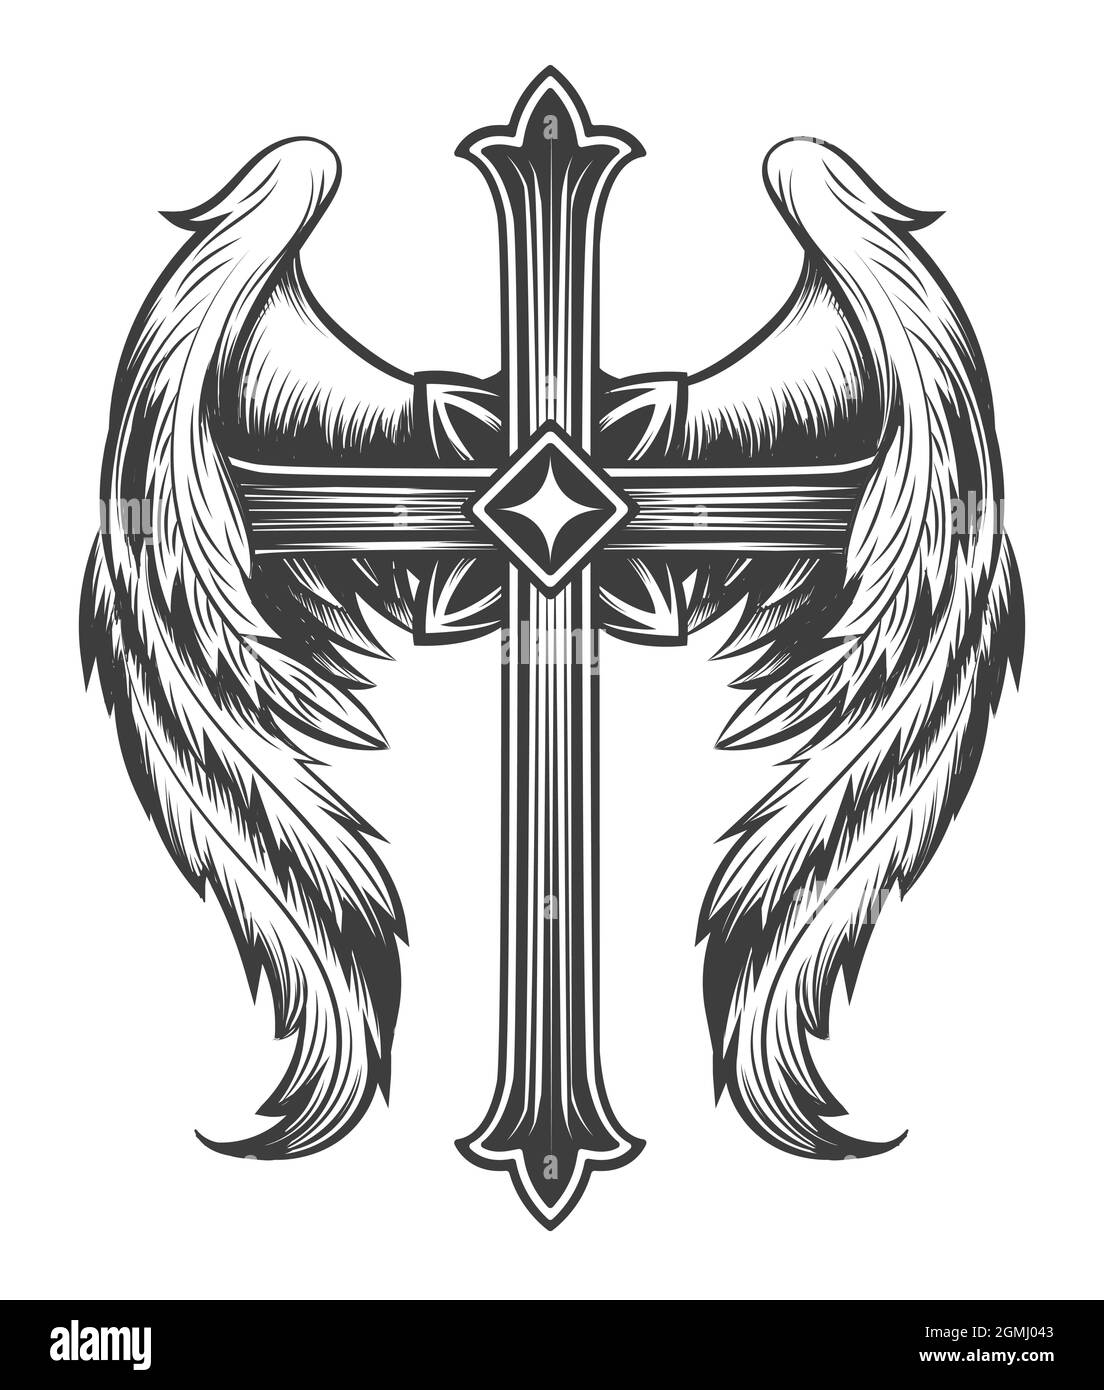 Tatuaggio o croce alare disegnata in stile engraving monocromatico. Illustrazione vettoriale. Illustrazione Vettoriale